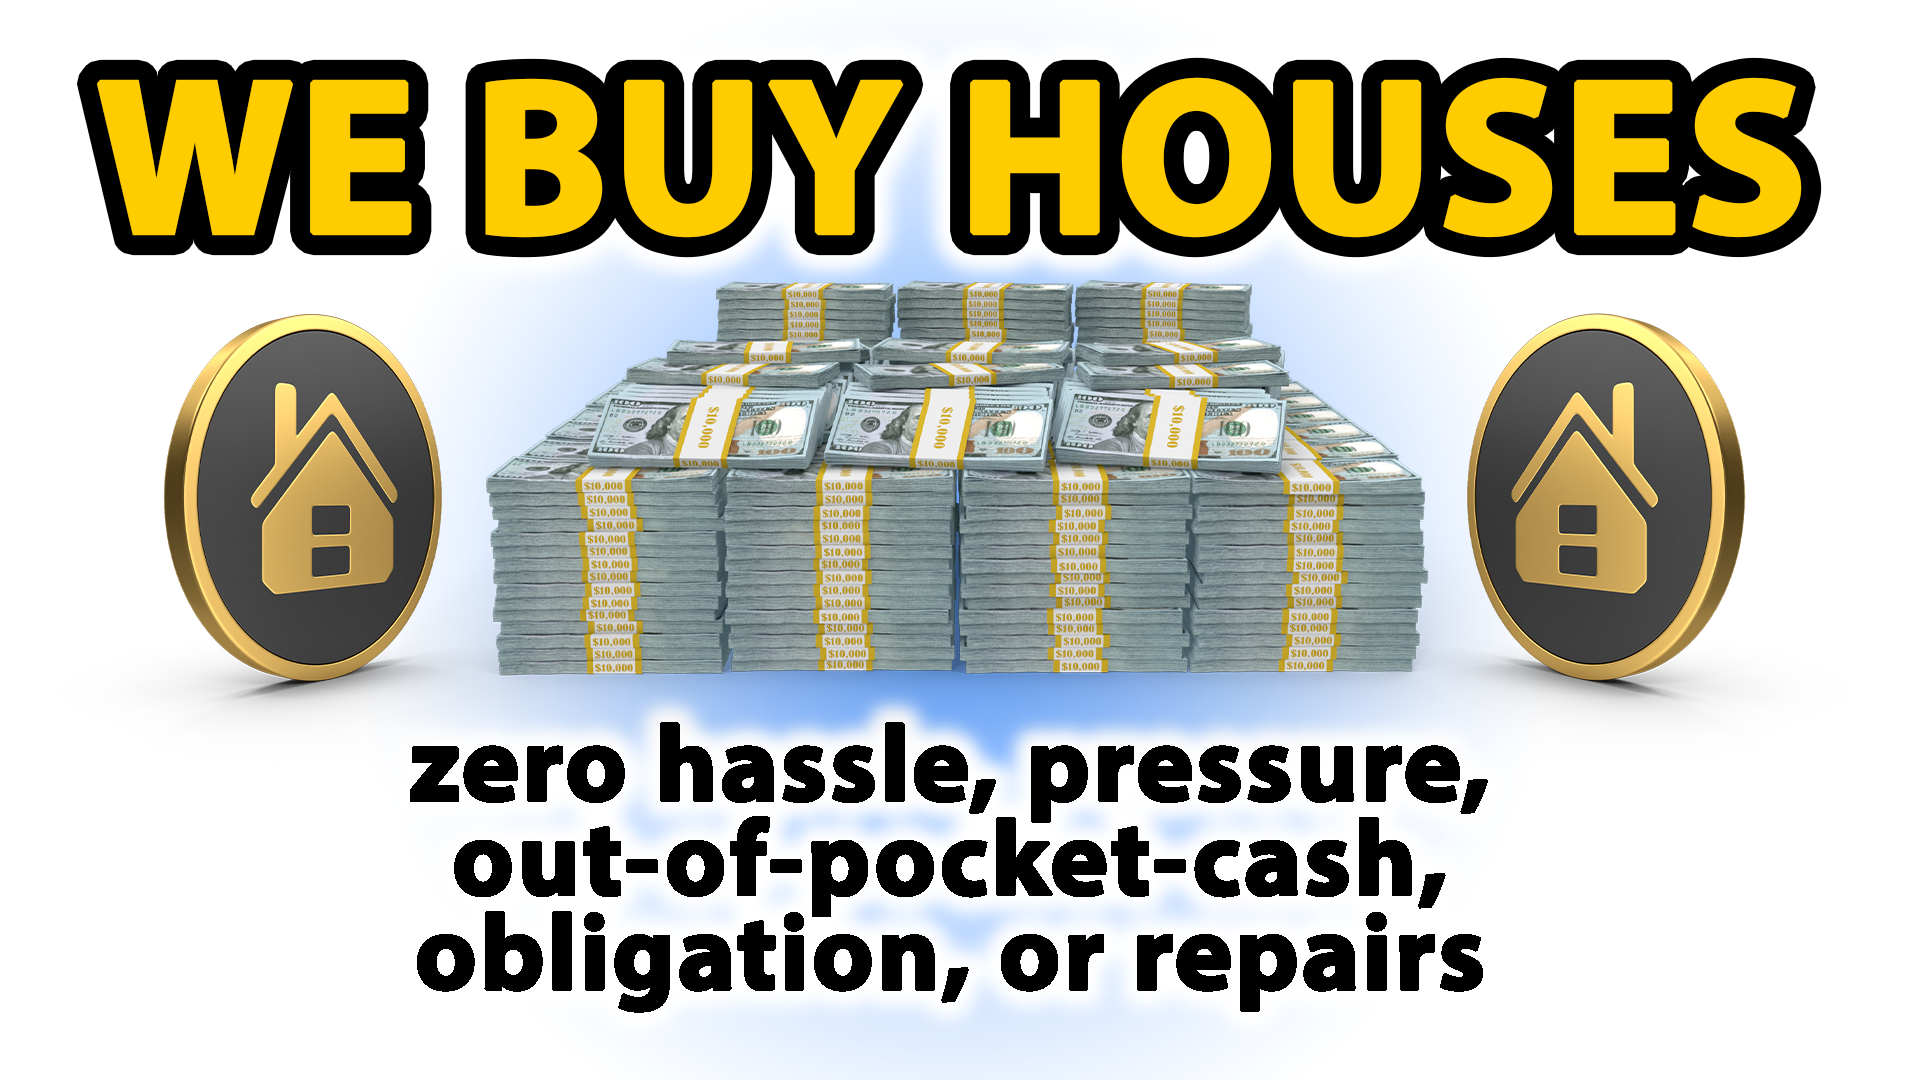 We Buy Houses 4 Fast Cash 247 Power Cash Offer Kings